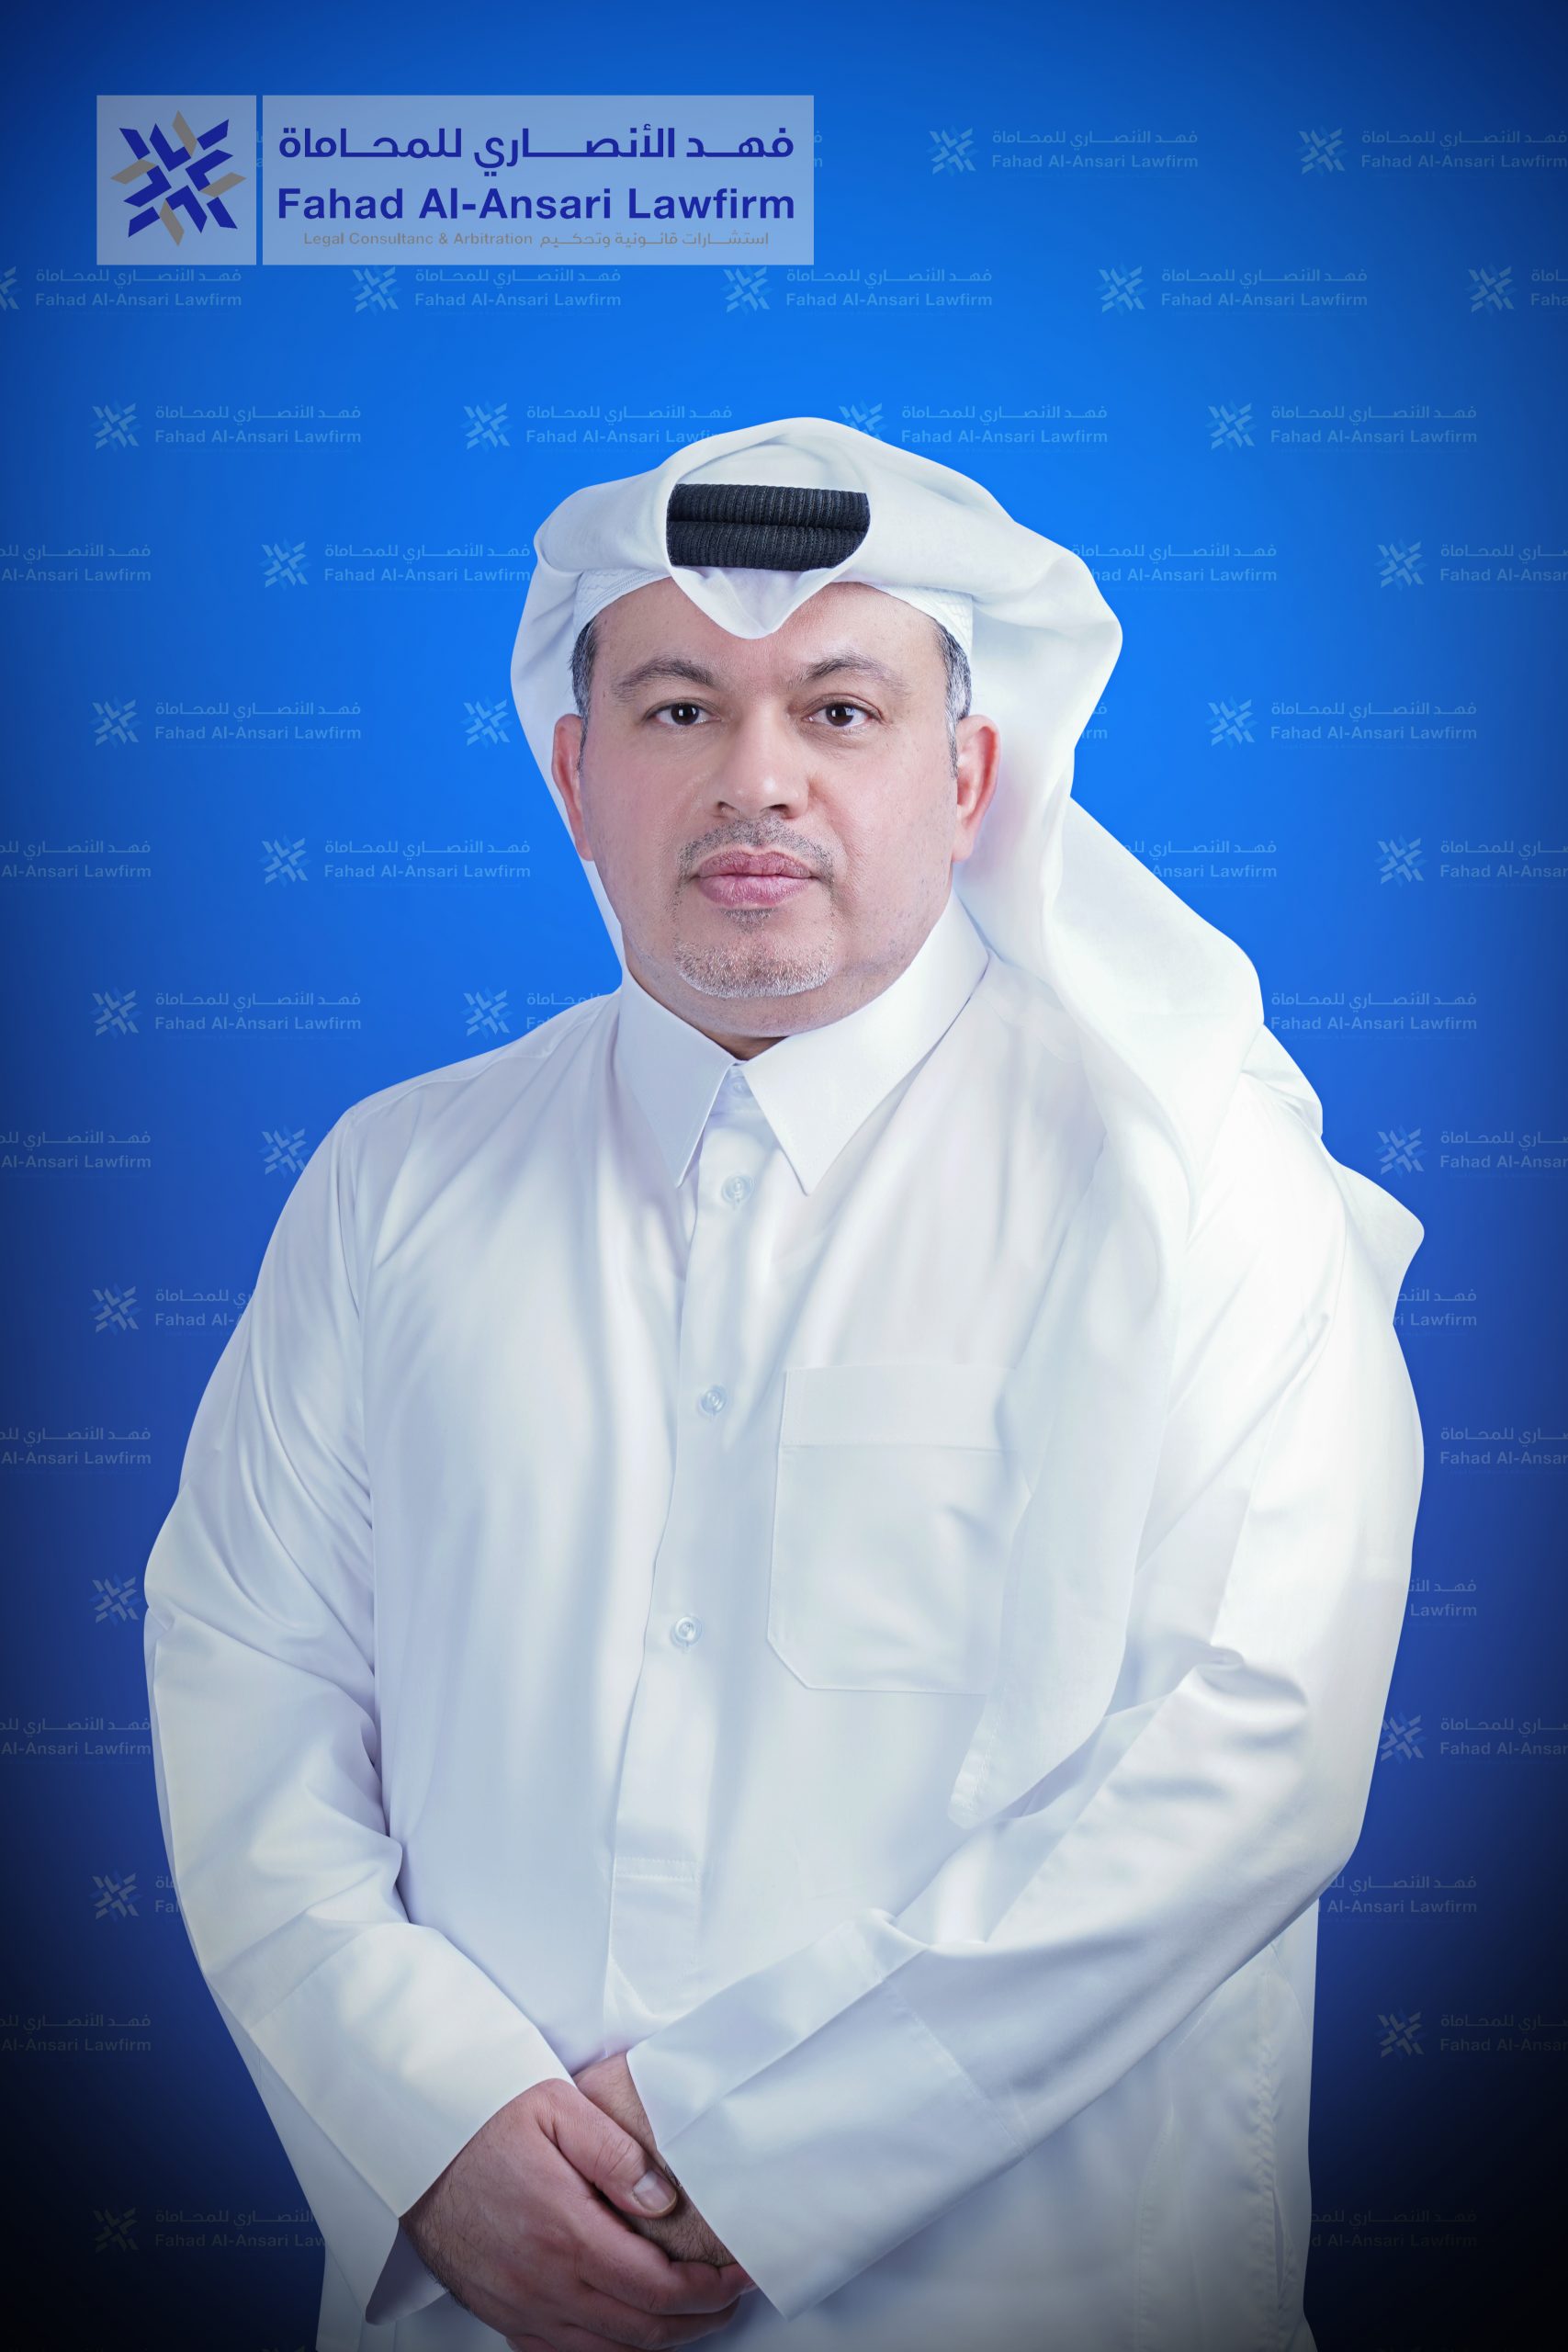  الرئيس فهد محمد الانصاري 